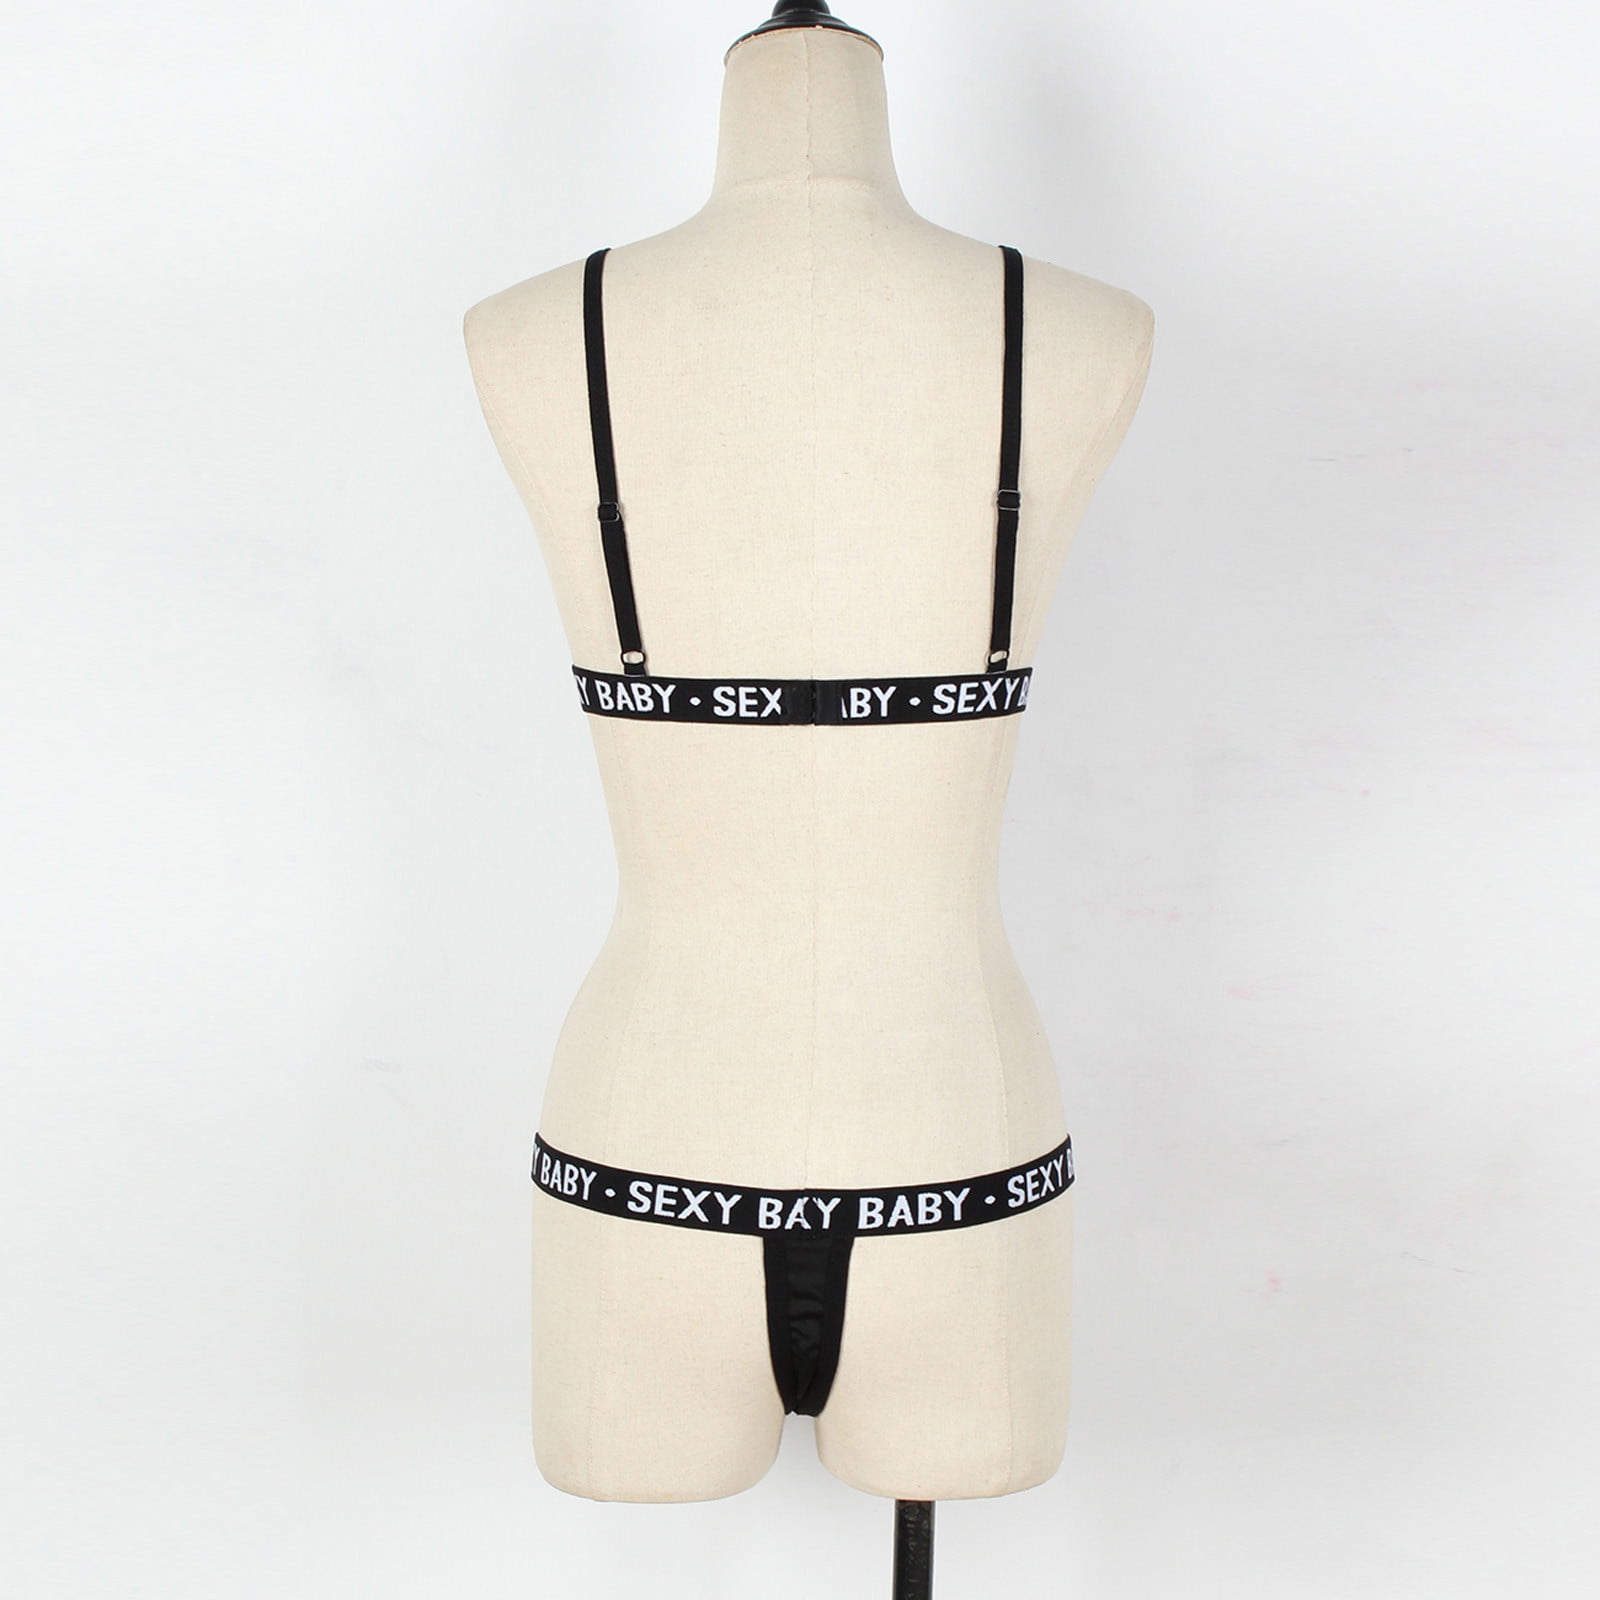 Buy online Set Of 2 Printed Regular Bra from lingerie for Women by